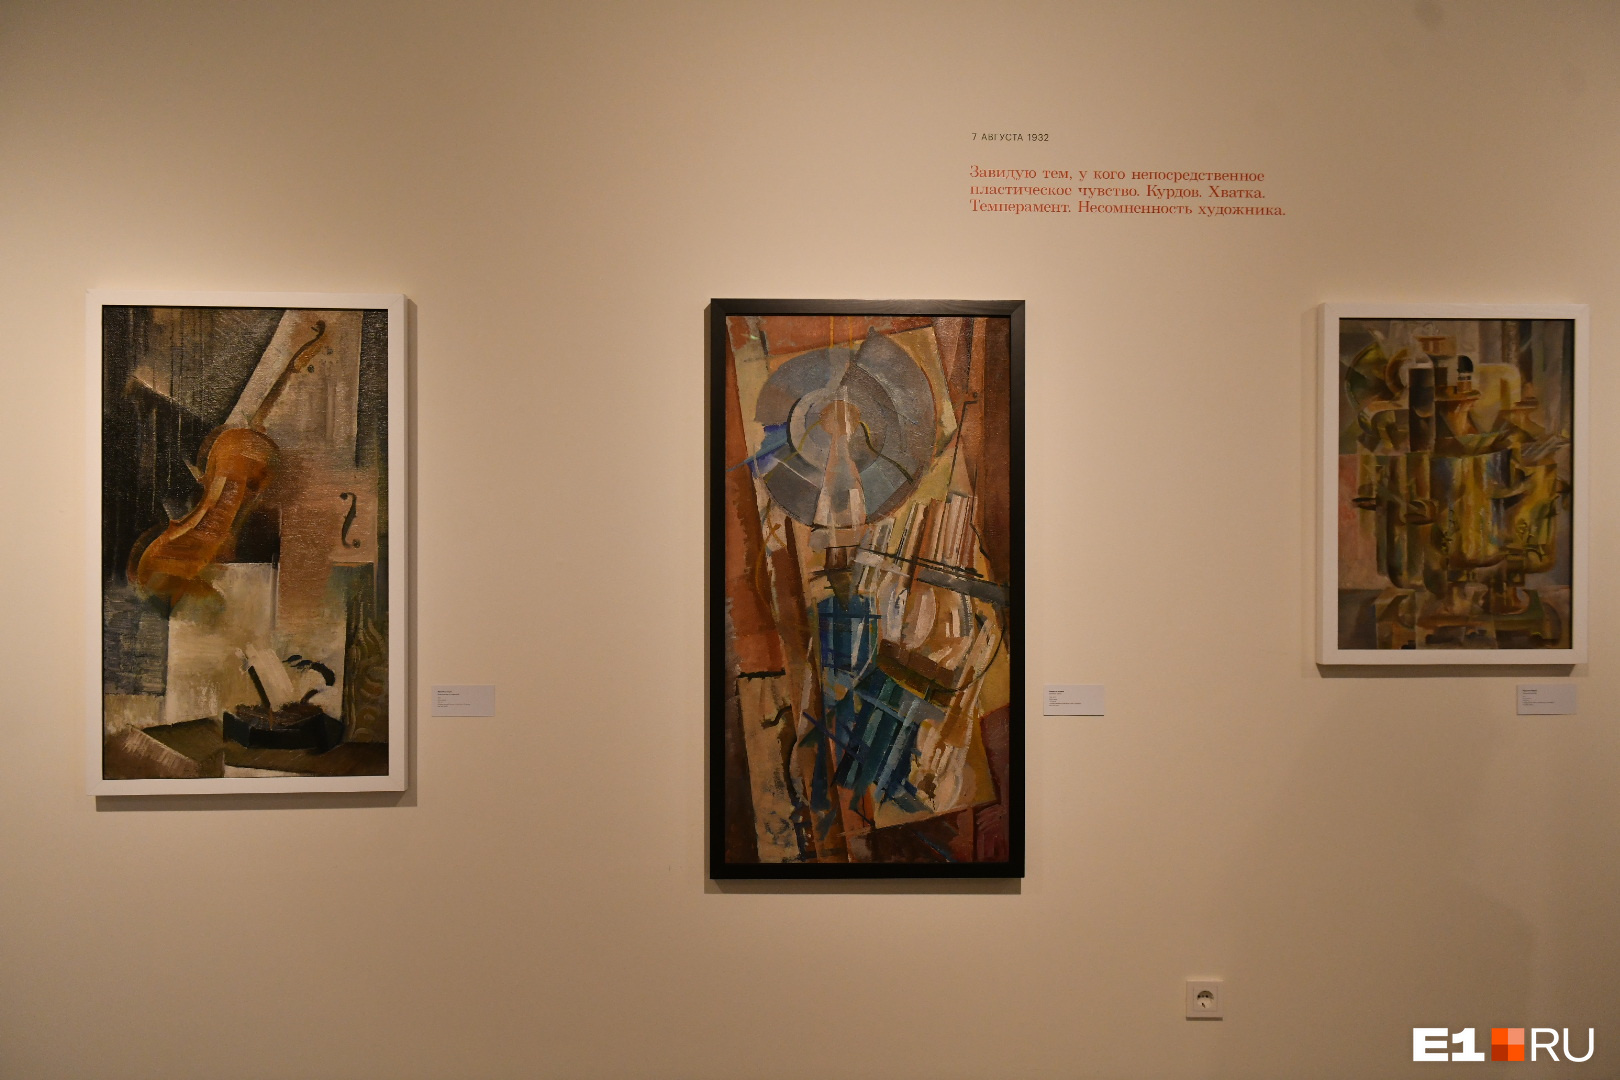 Работы художника Валентина Курдова. Та, что справа, называется «Медный самовар». Приглядитесь, и вы его увидите